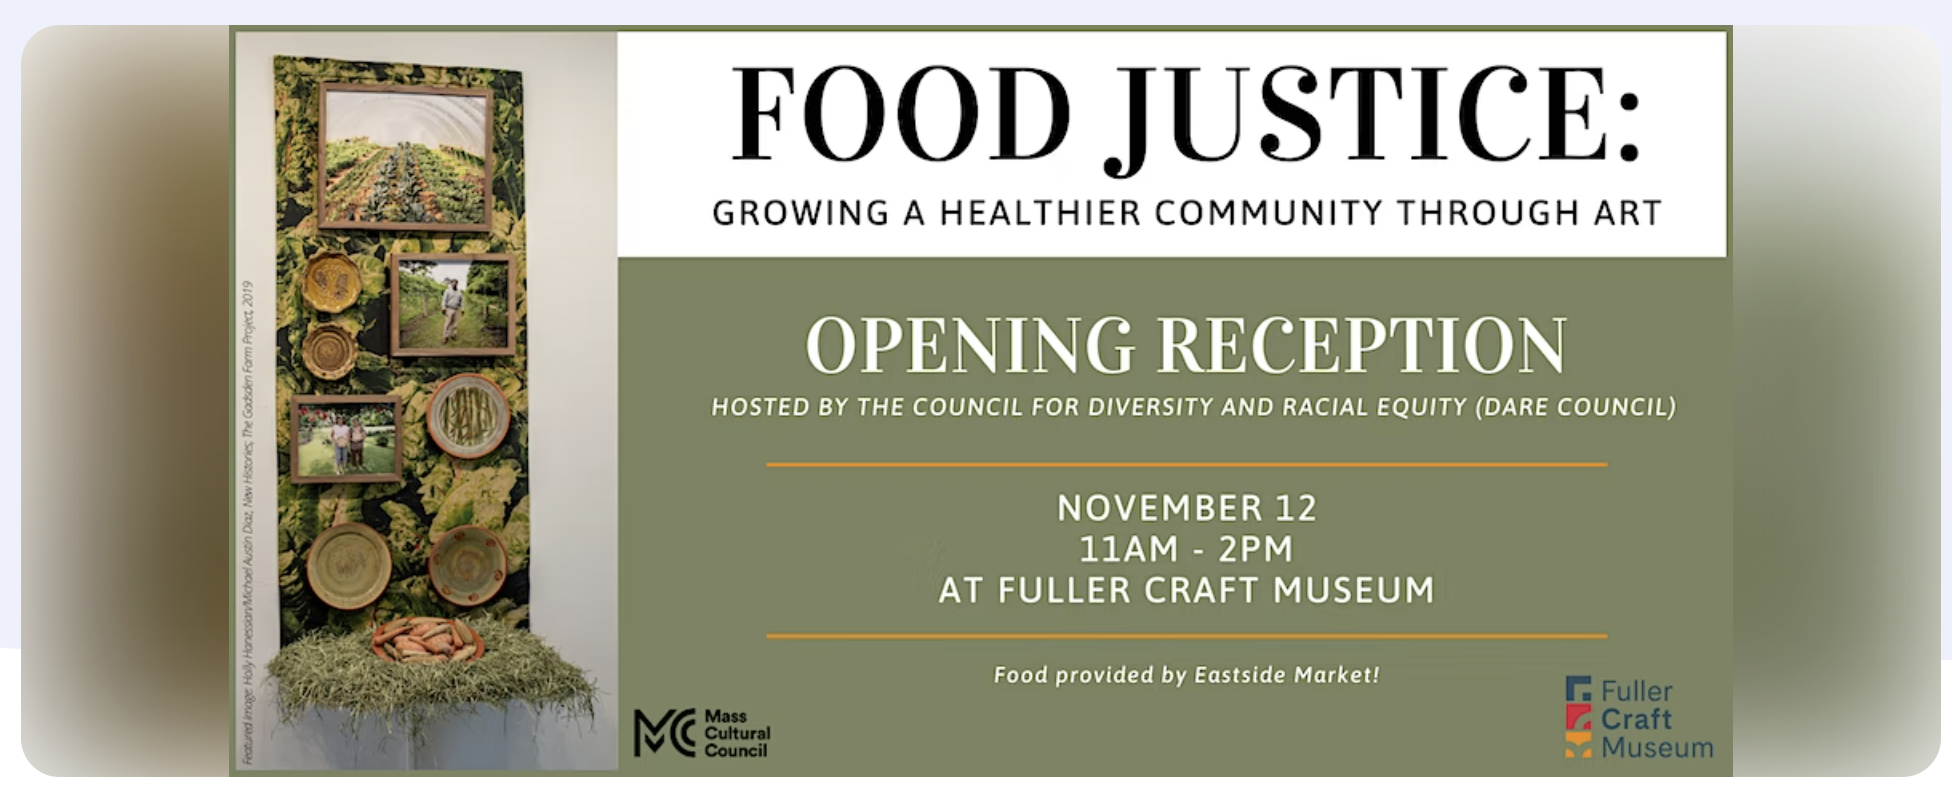 Food Justice: Growing a Healthier Community Through Art, Brockton